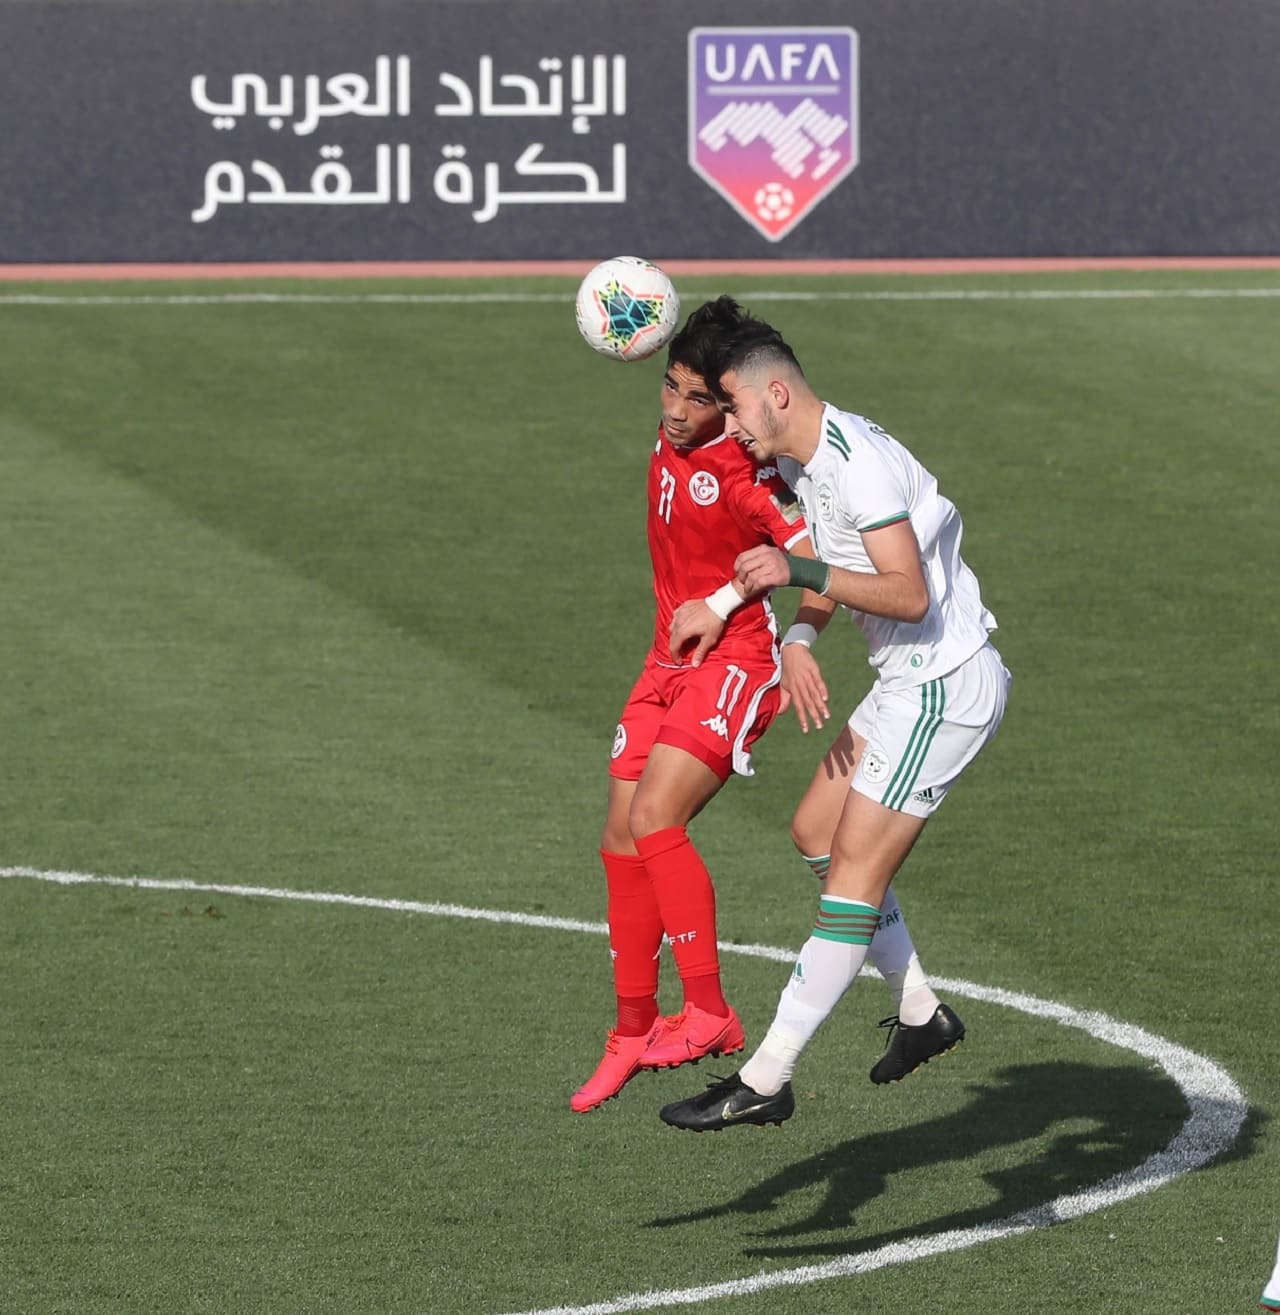 تونس إلى نصف نهائي كأس العرب